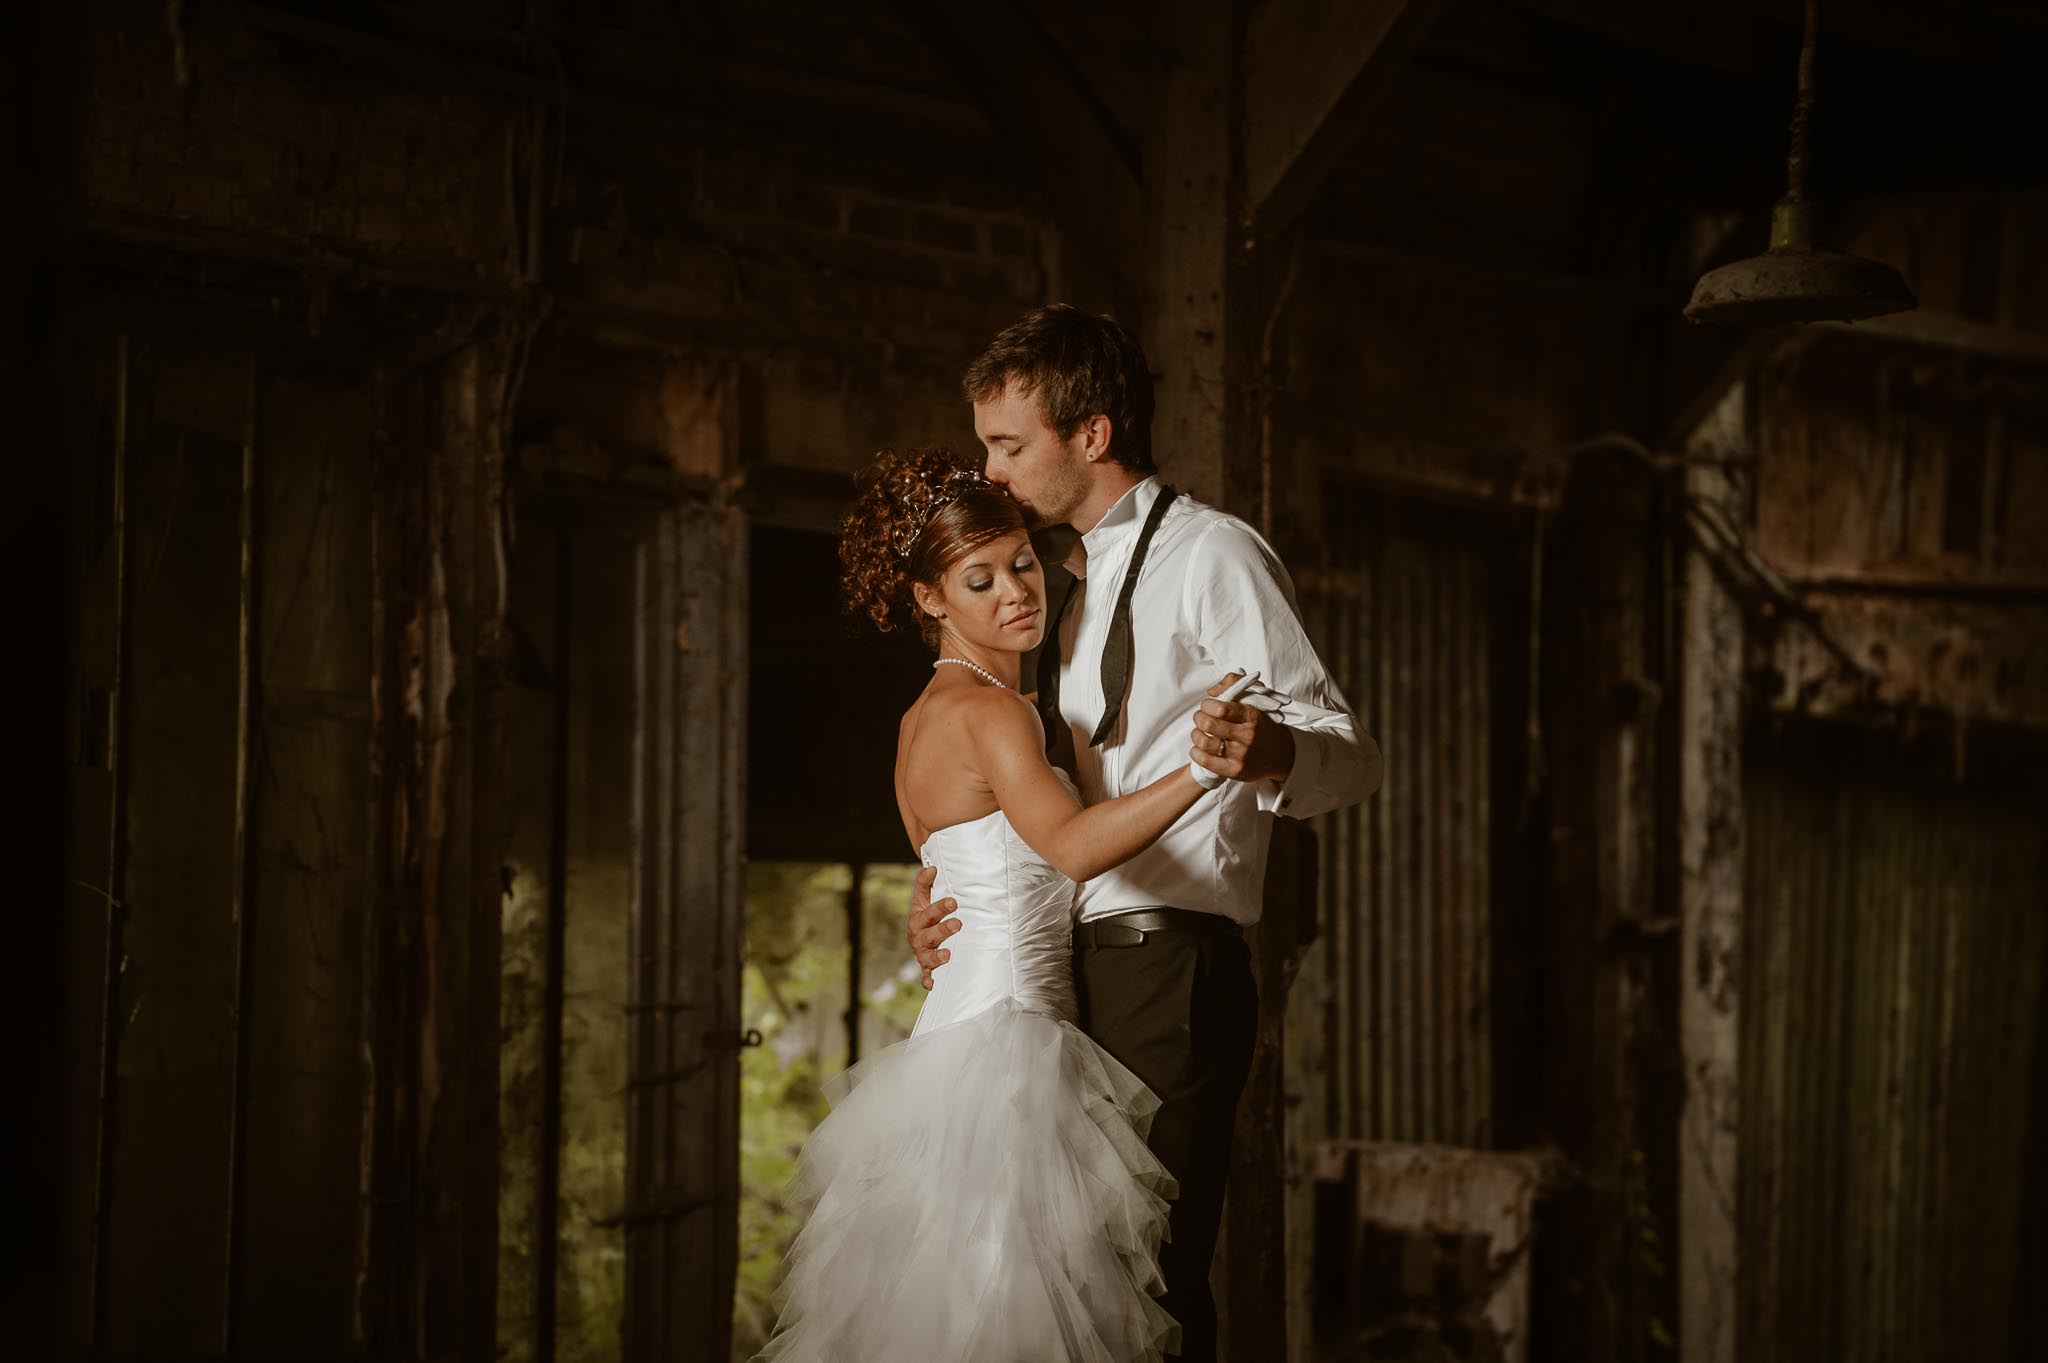 Séance couple après mariage poétique & romantique dans une friche pré-industrielle près de Amiens par Geoffrey Arnoldy photographe